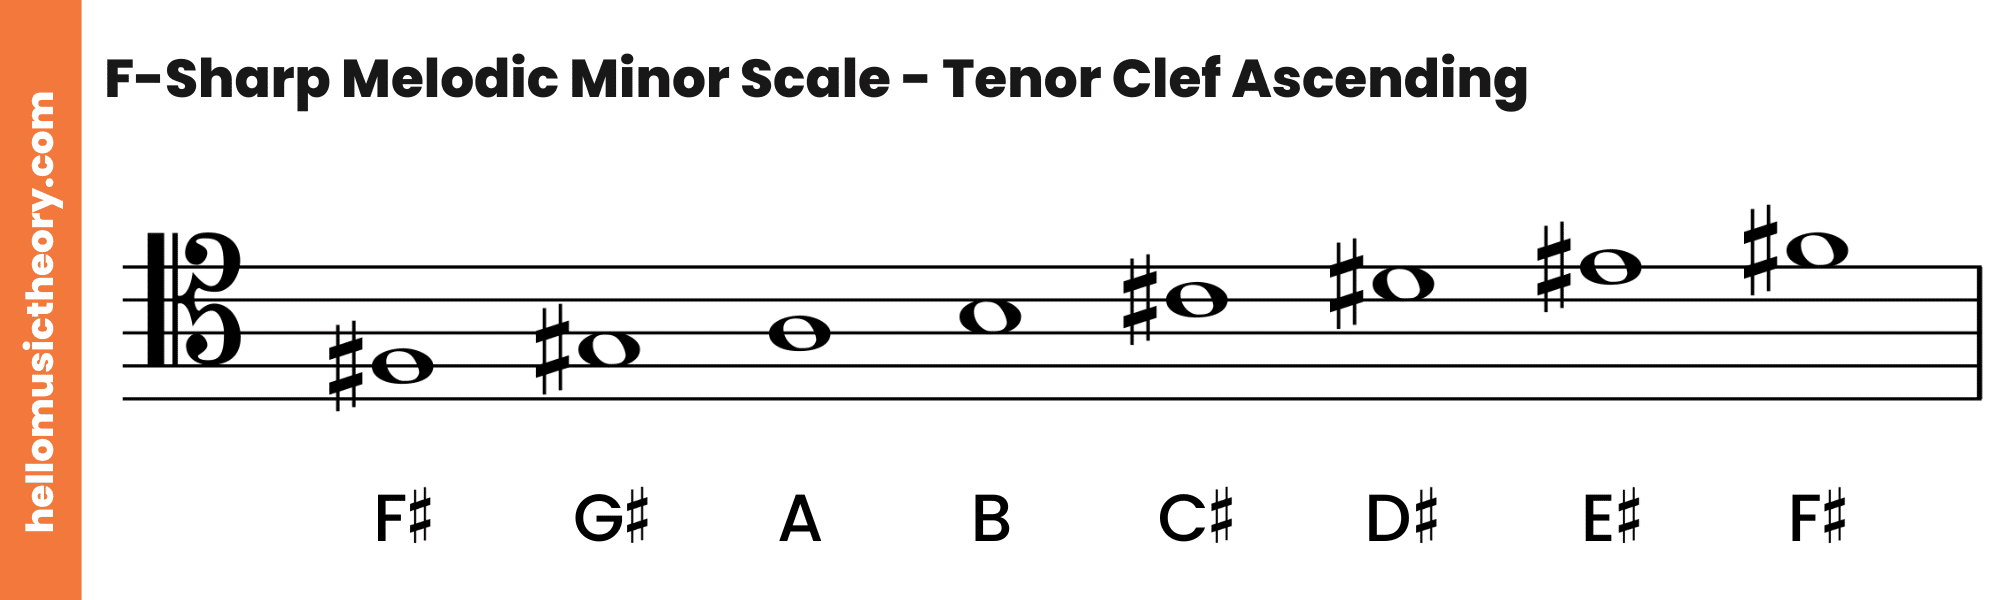 F-Sharp Melodic Minor Scale Tenor Clef Ascending